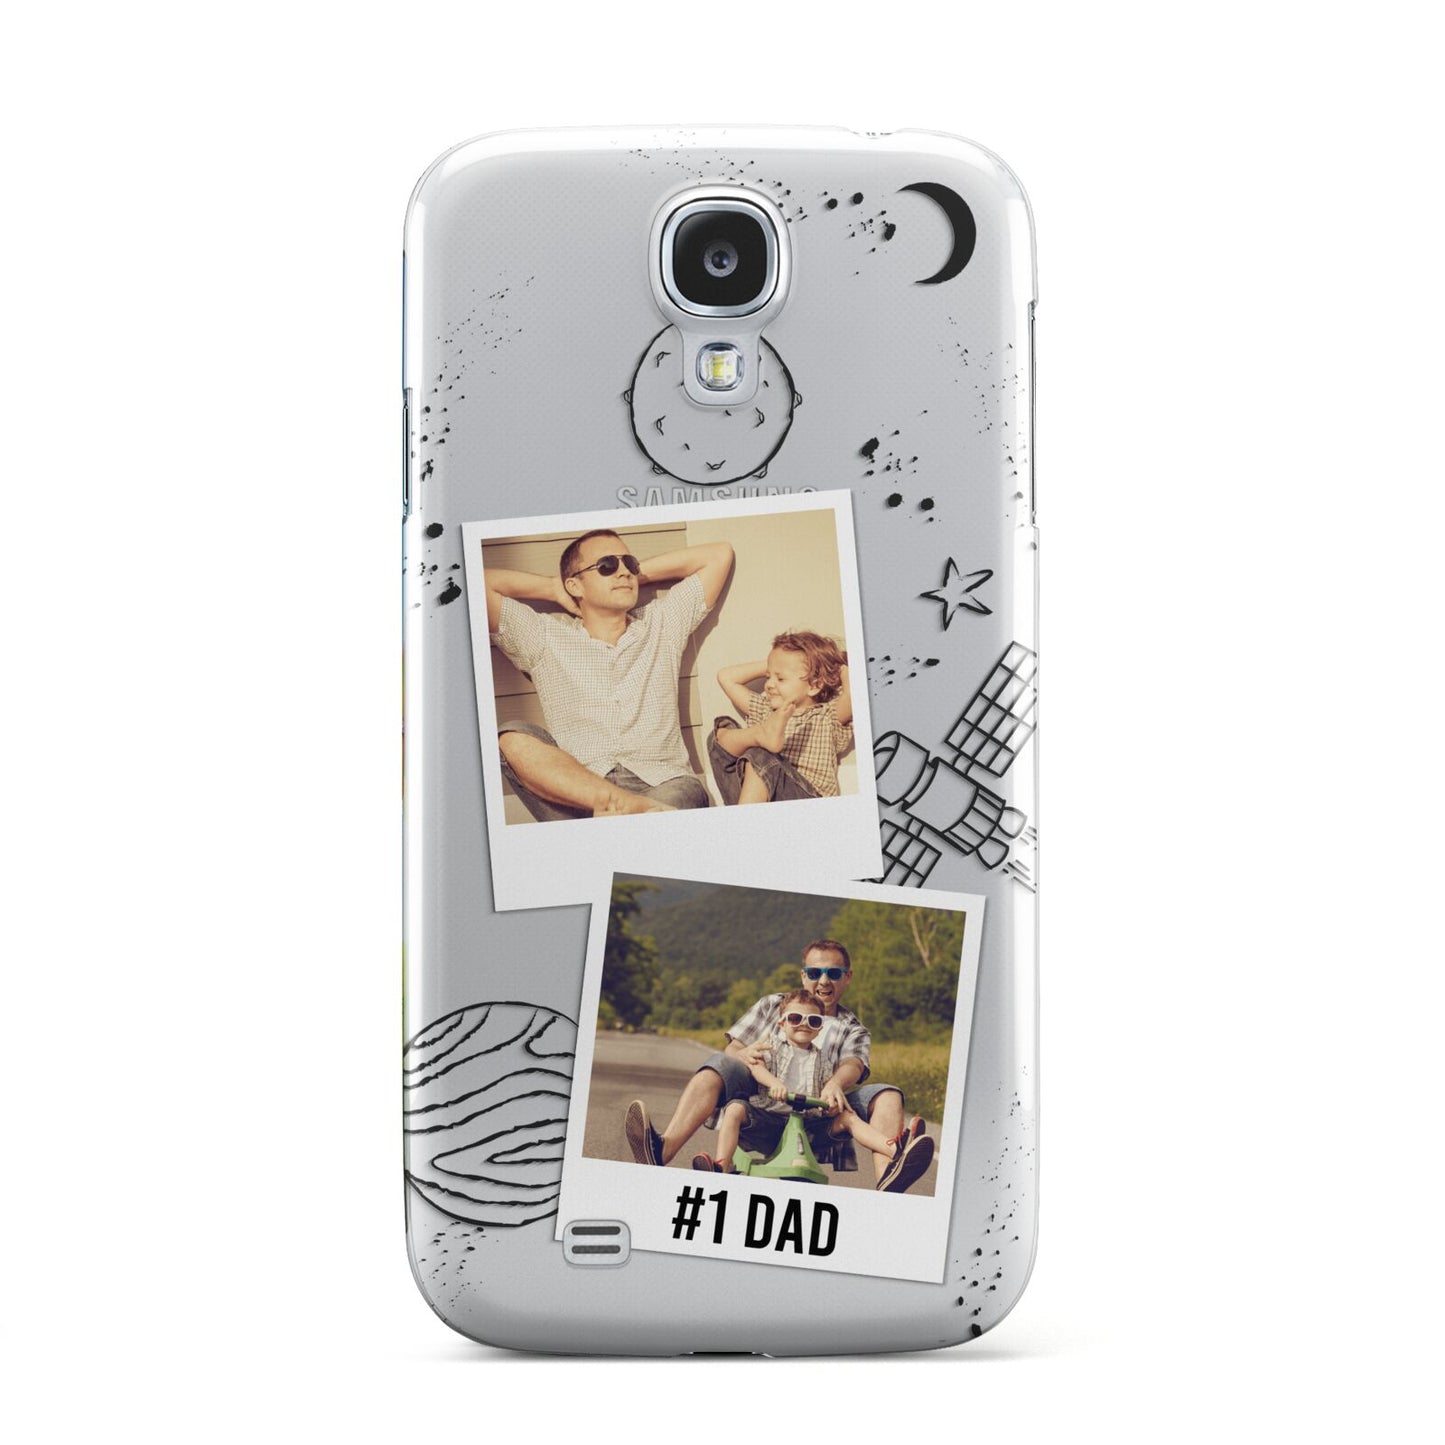 Personalised Dad Photos Samsung Galaxy S4 Case